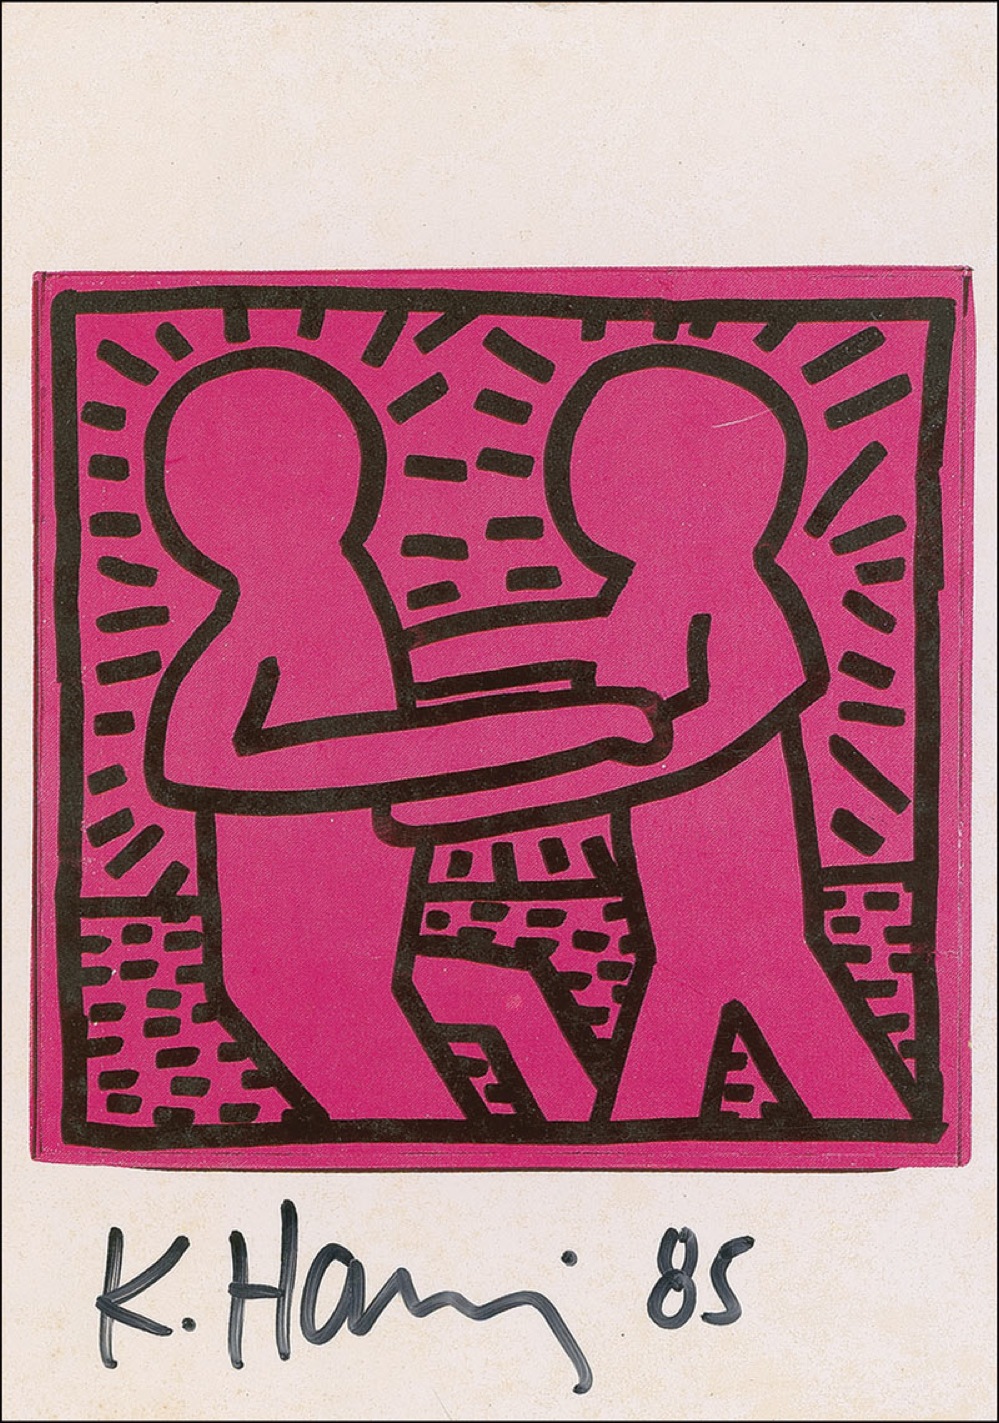 Lot #507 Keith Haring